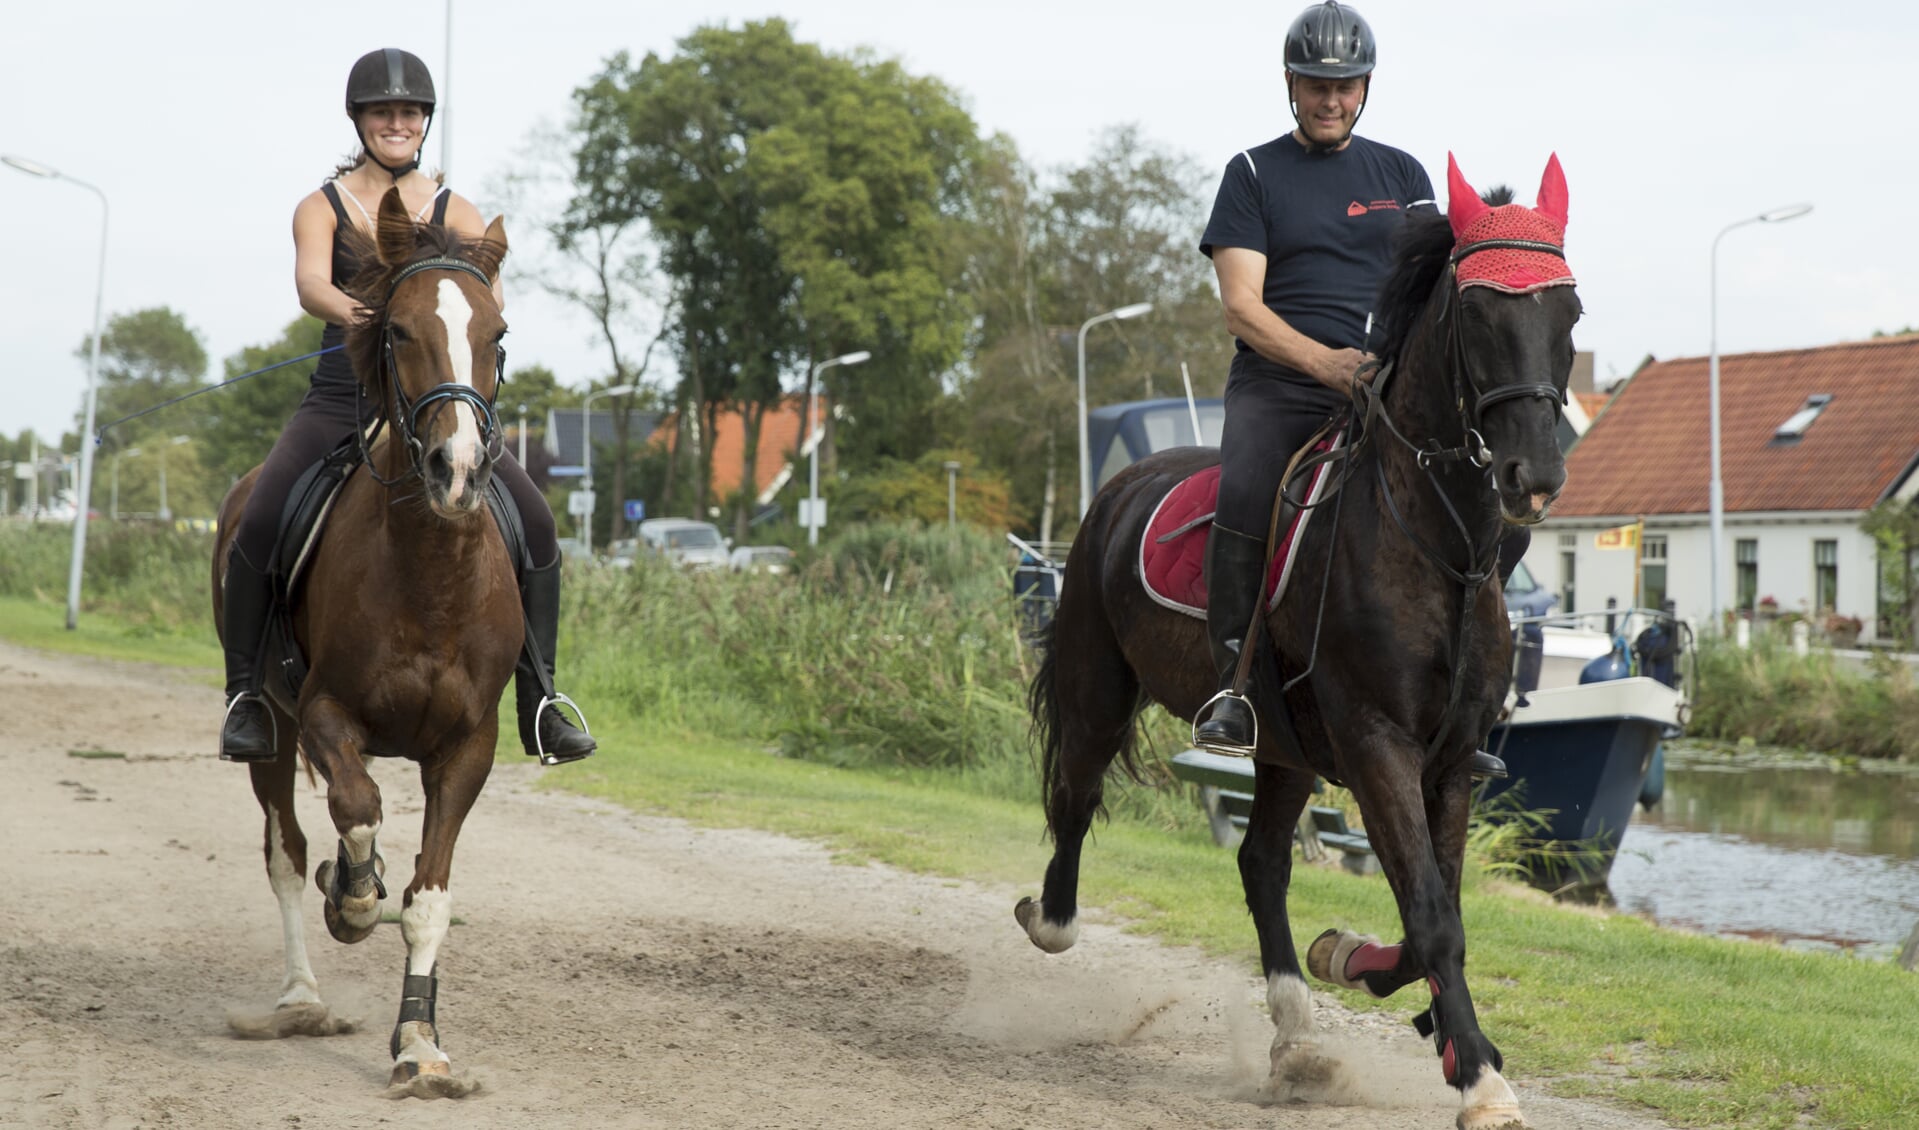 De traditionele draverij voor boeren-, recreatiepaarden en pony's vindt zaterdag 8 september plaats tijdens de kermis van Schagerbrug. (Foto: aangeleverd)